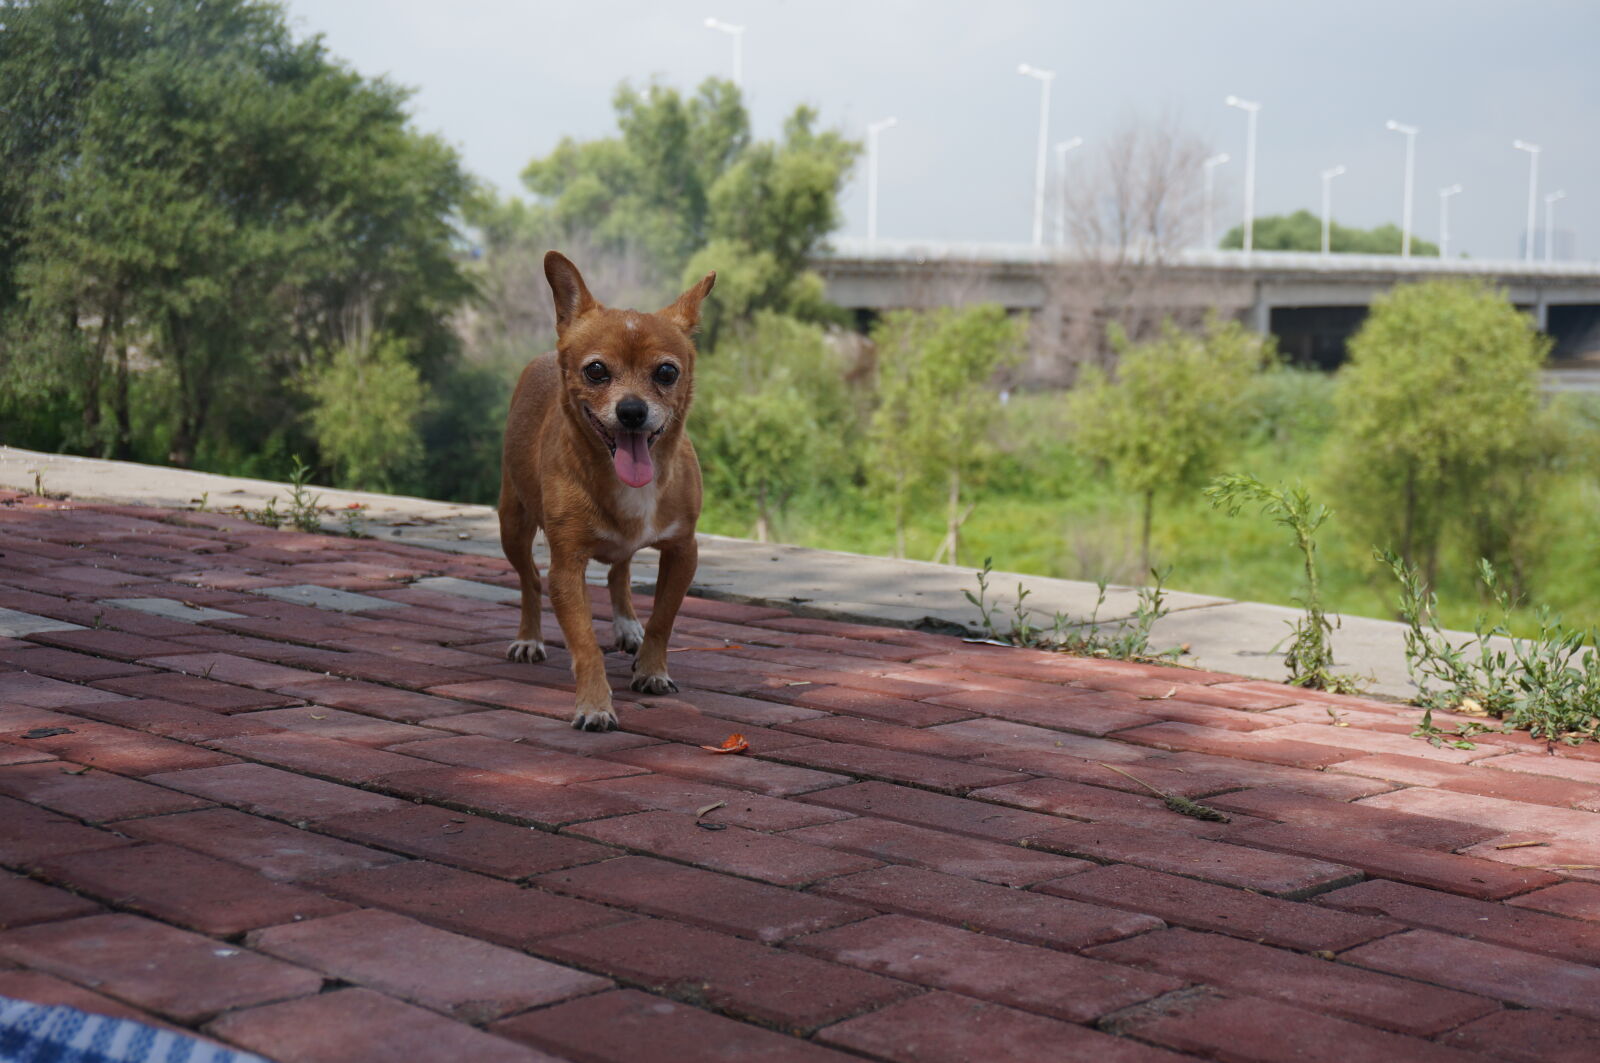 Sony Alpha NEX-5T sample photo. Dog, lovely, loyalty, pets photography